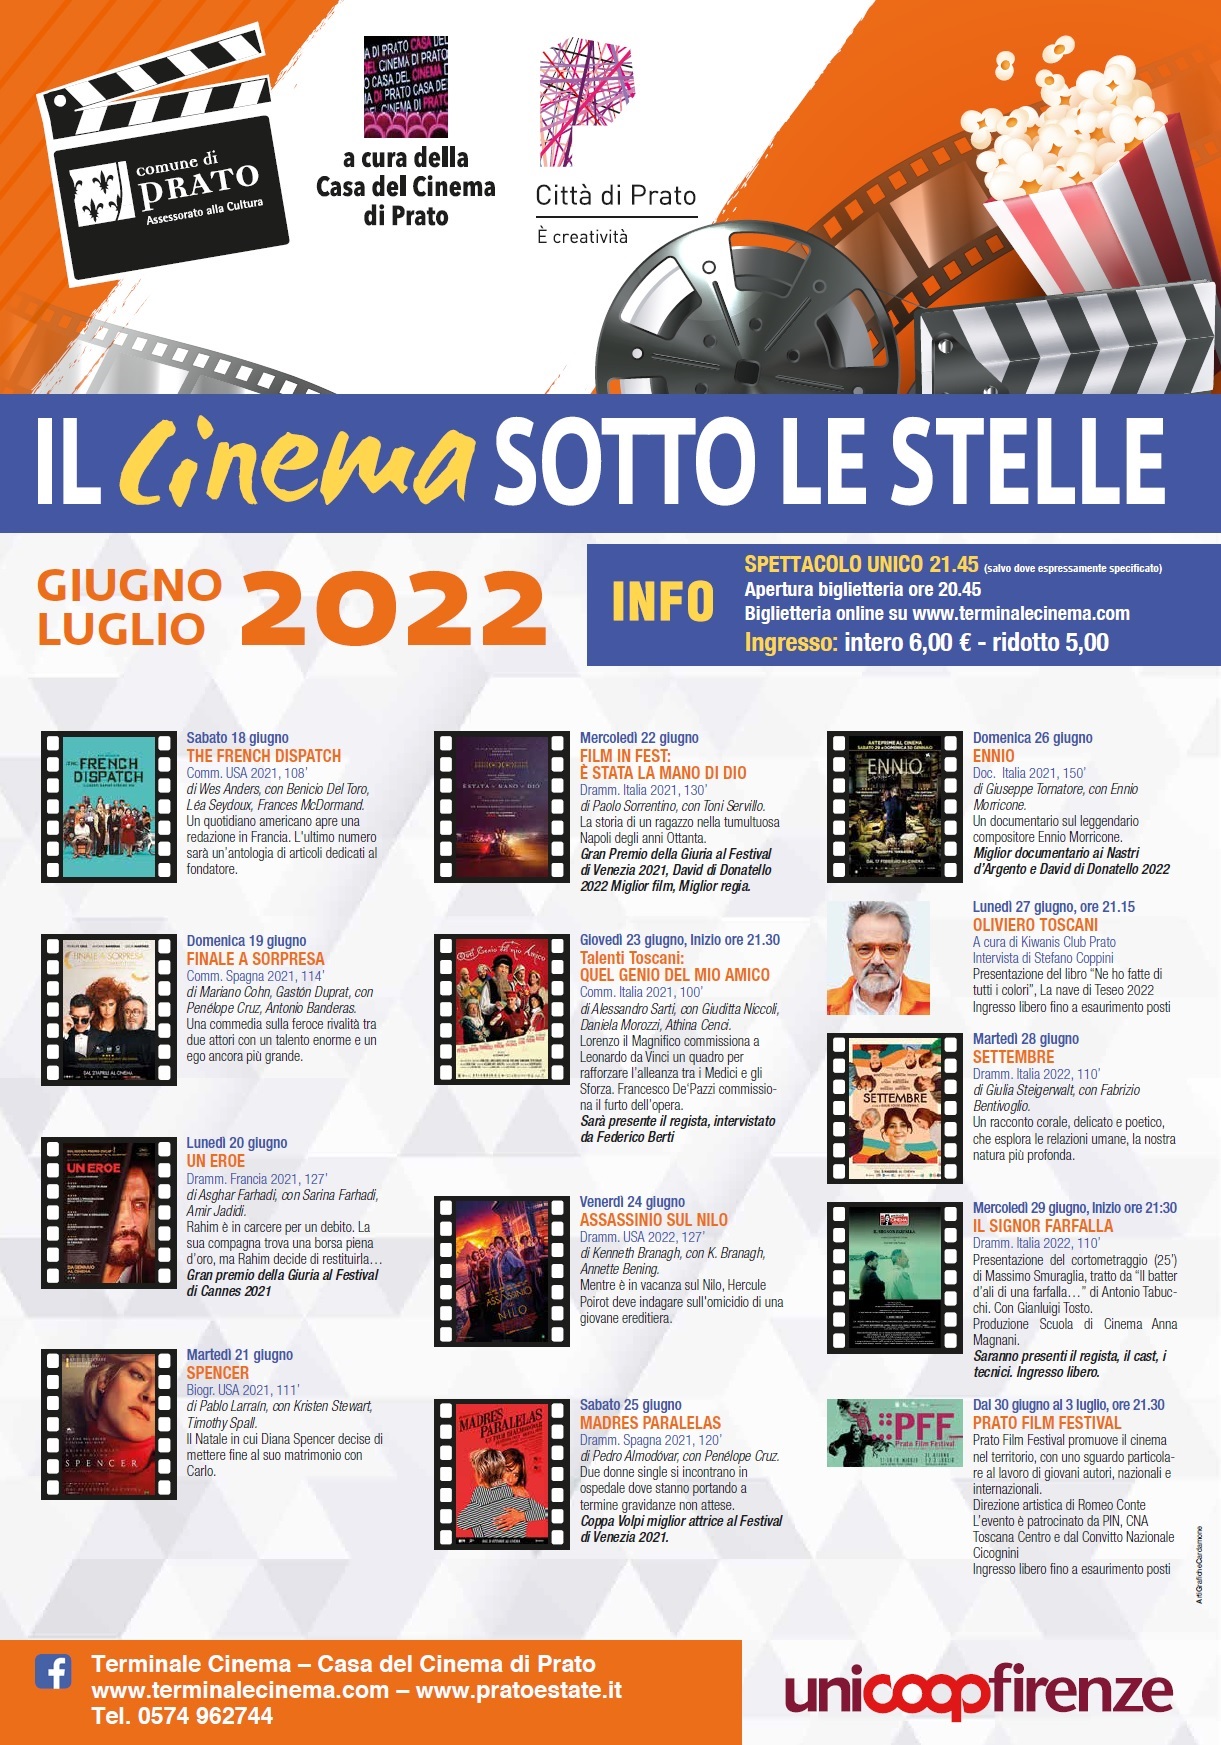 CINEMA AL CASTELLO 2022. IL PROGRAMMA DI GIUGNO